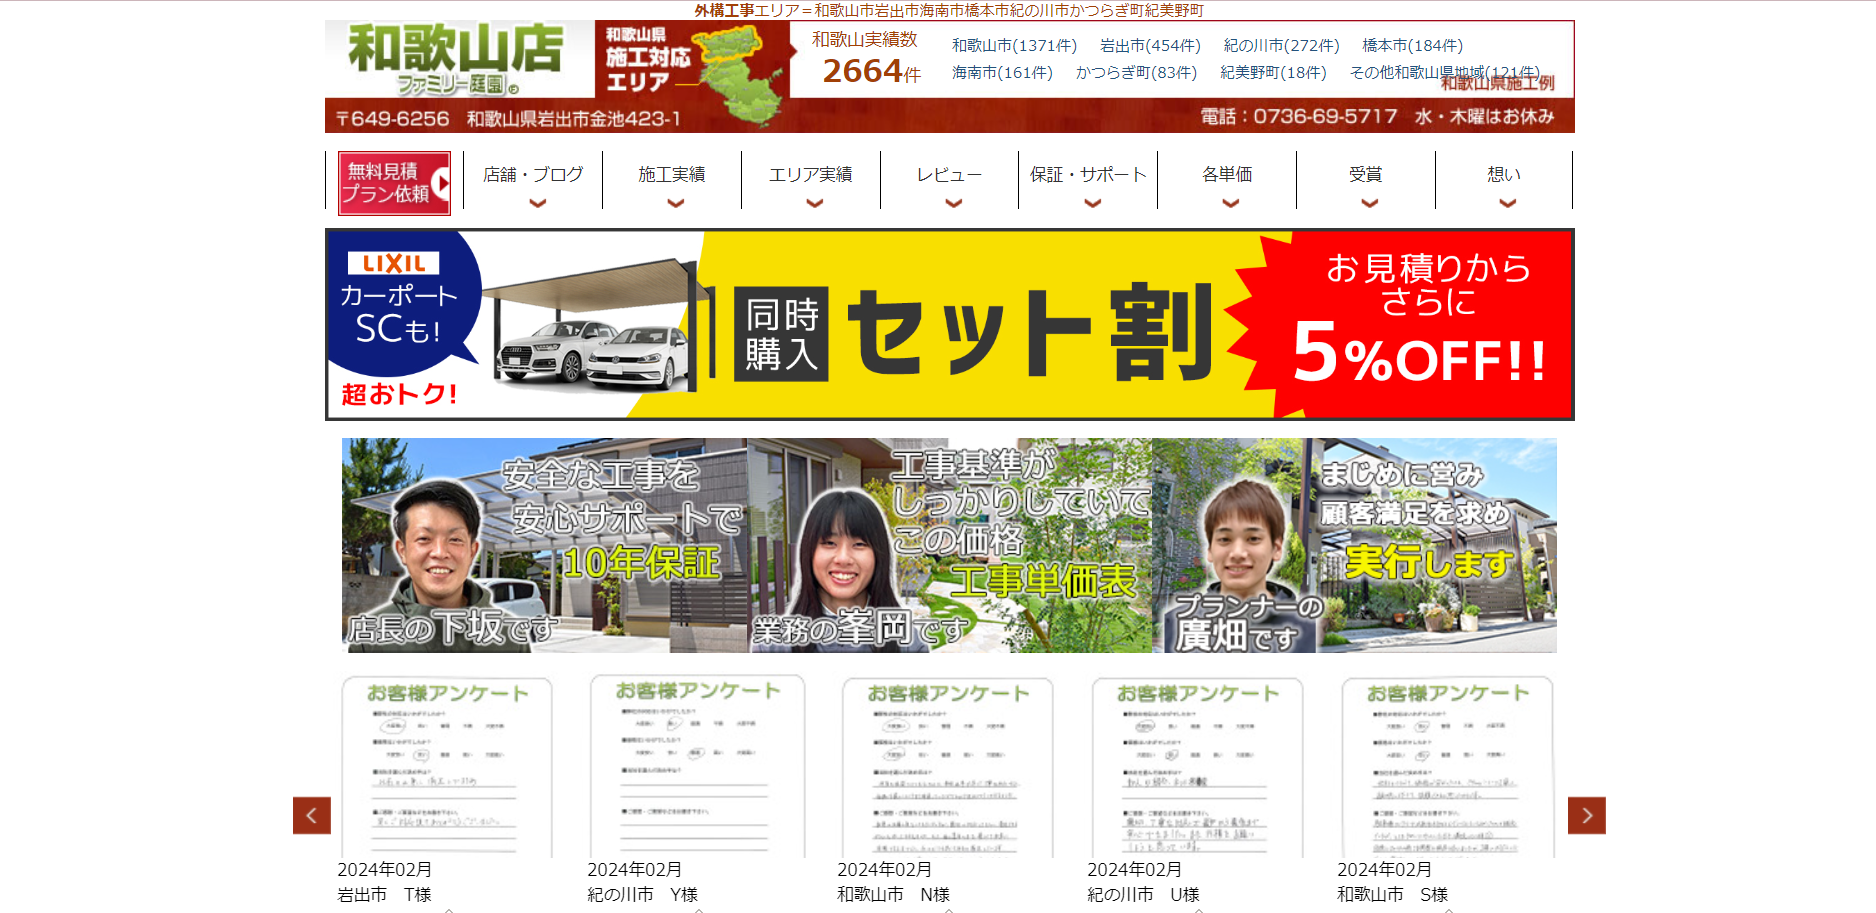 和歌山県で評判のおすすめ外構業者ランキング 第2位 ファミリー庭園 和歌山店